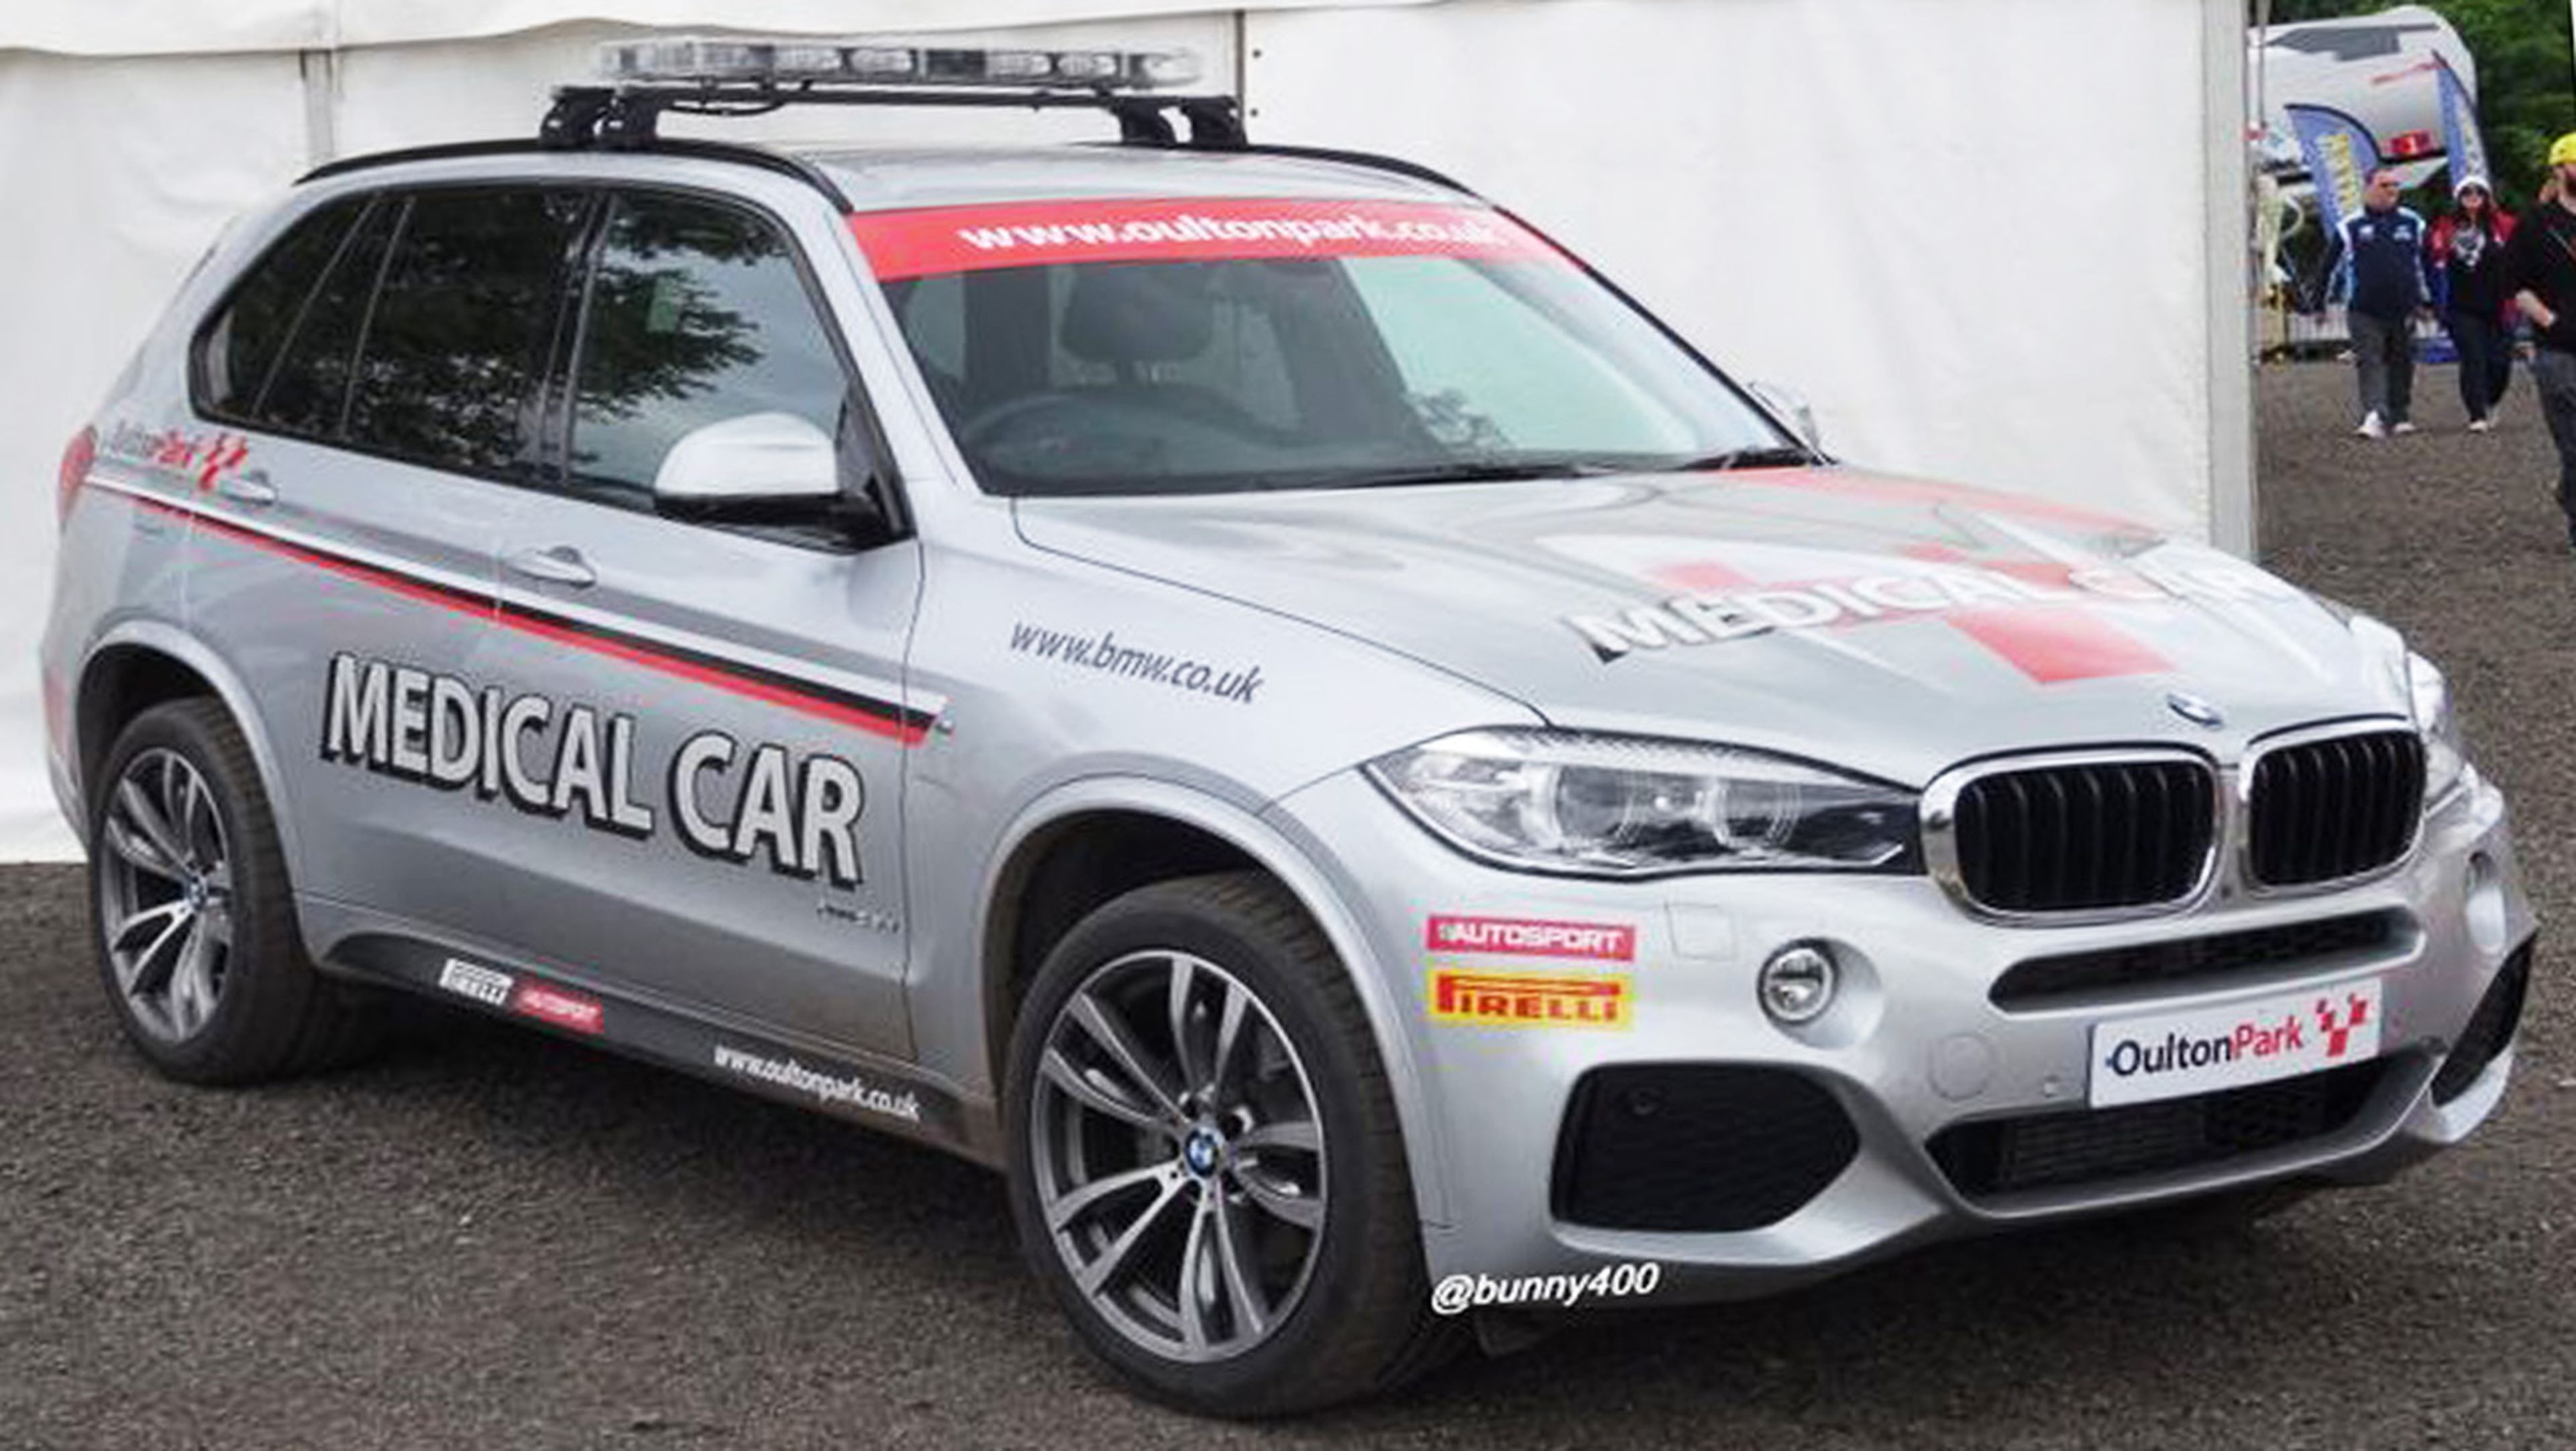 El BMW X5 que cumple las tareas de coche médico en Oulton Park